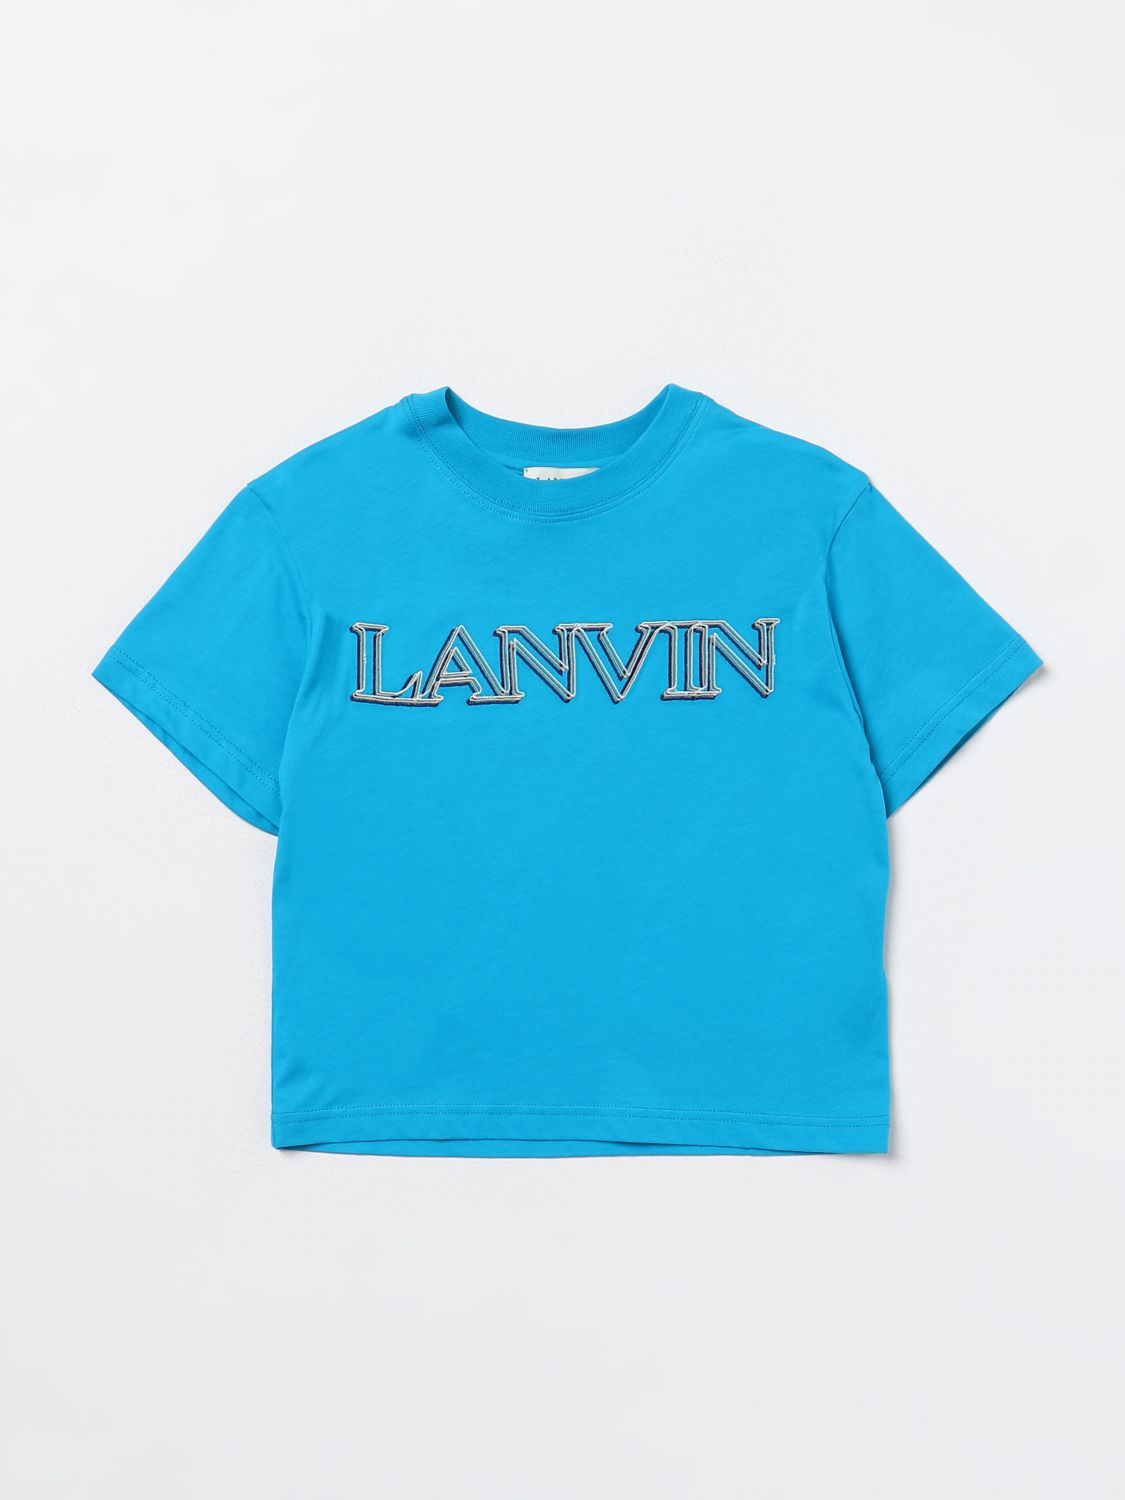 T恤 LANVIN 儿童 颜色 绿松石蓝